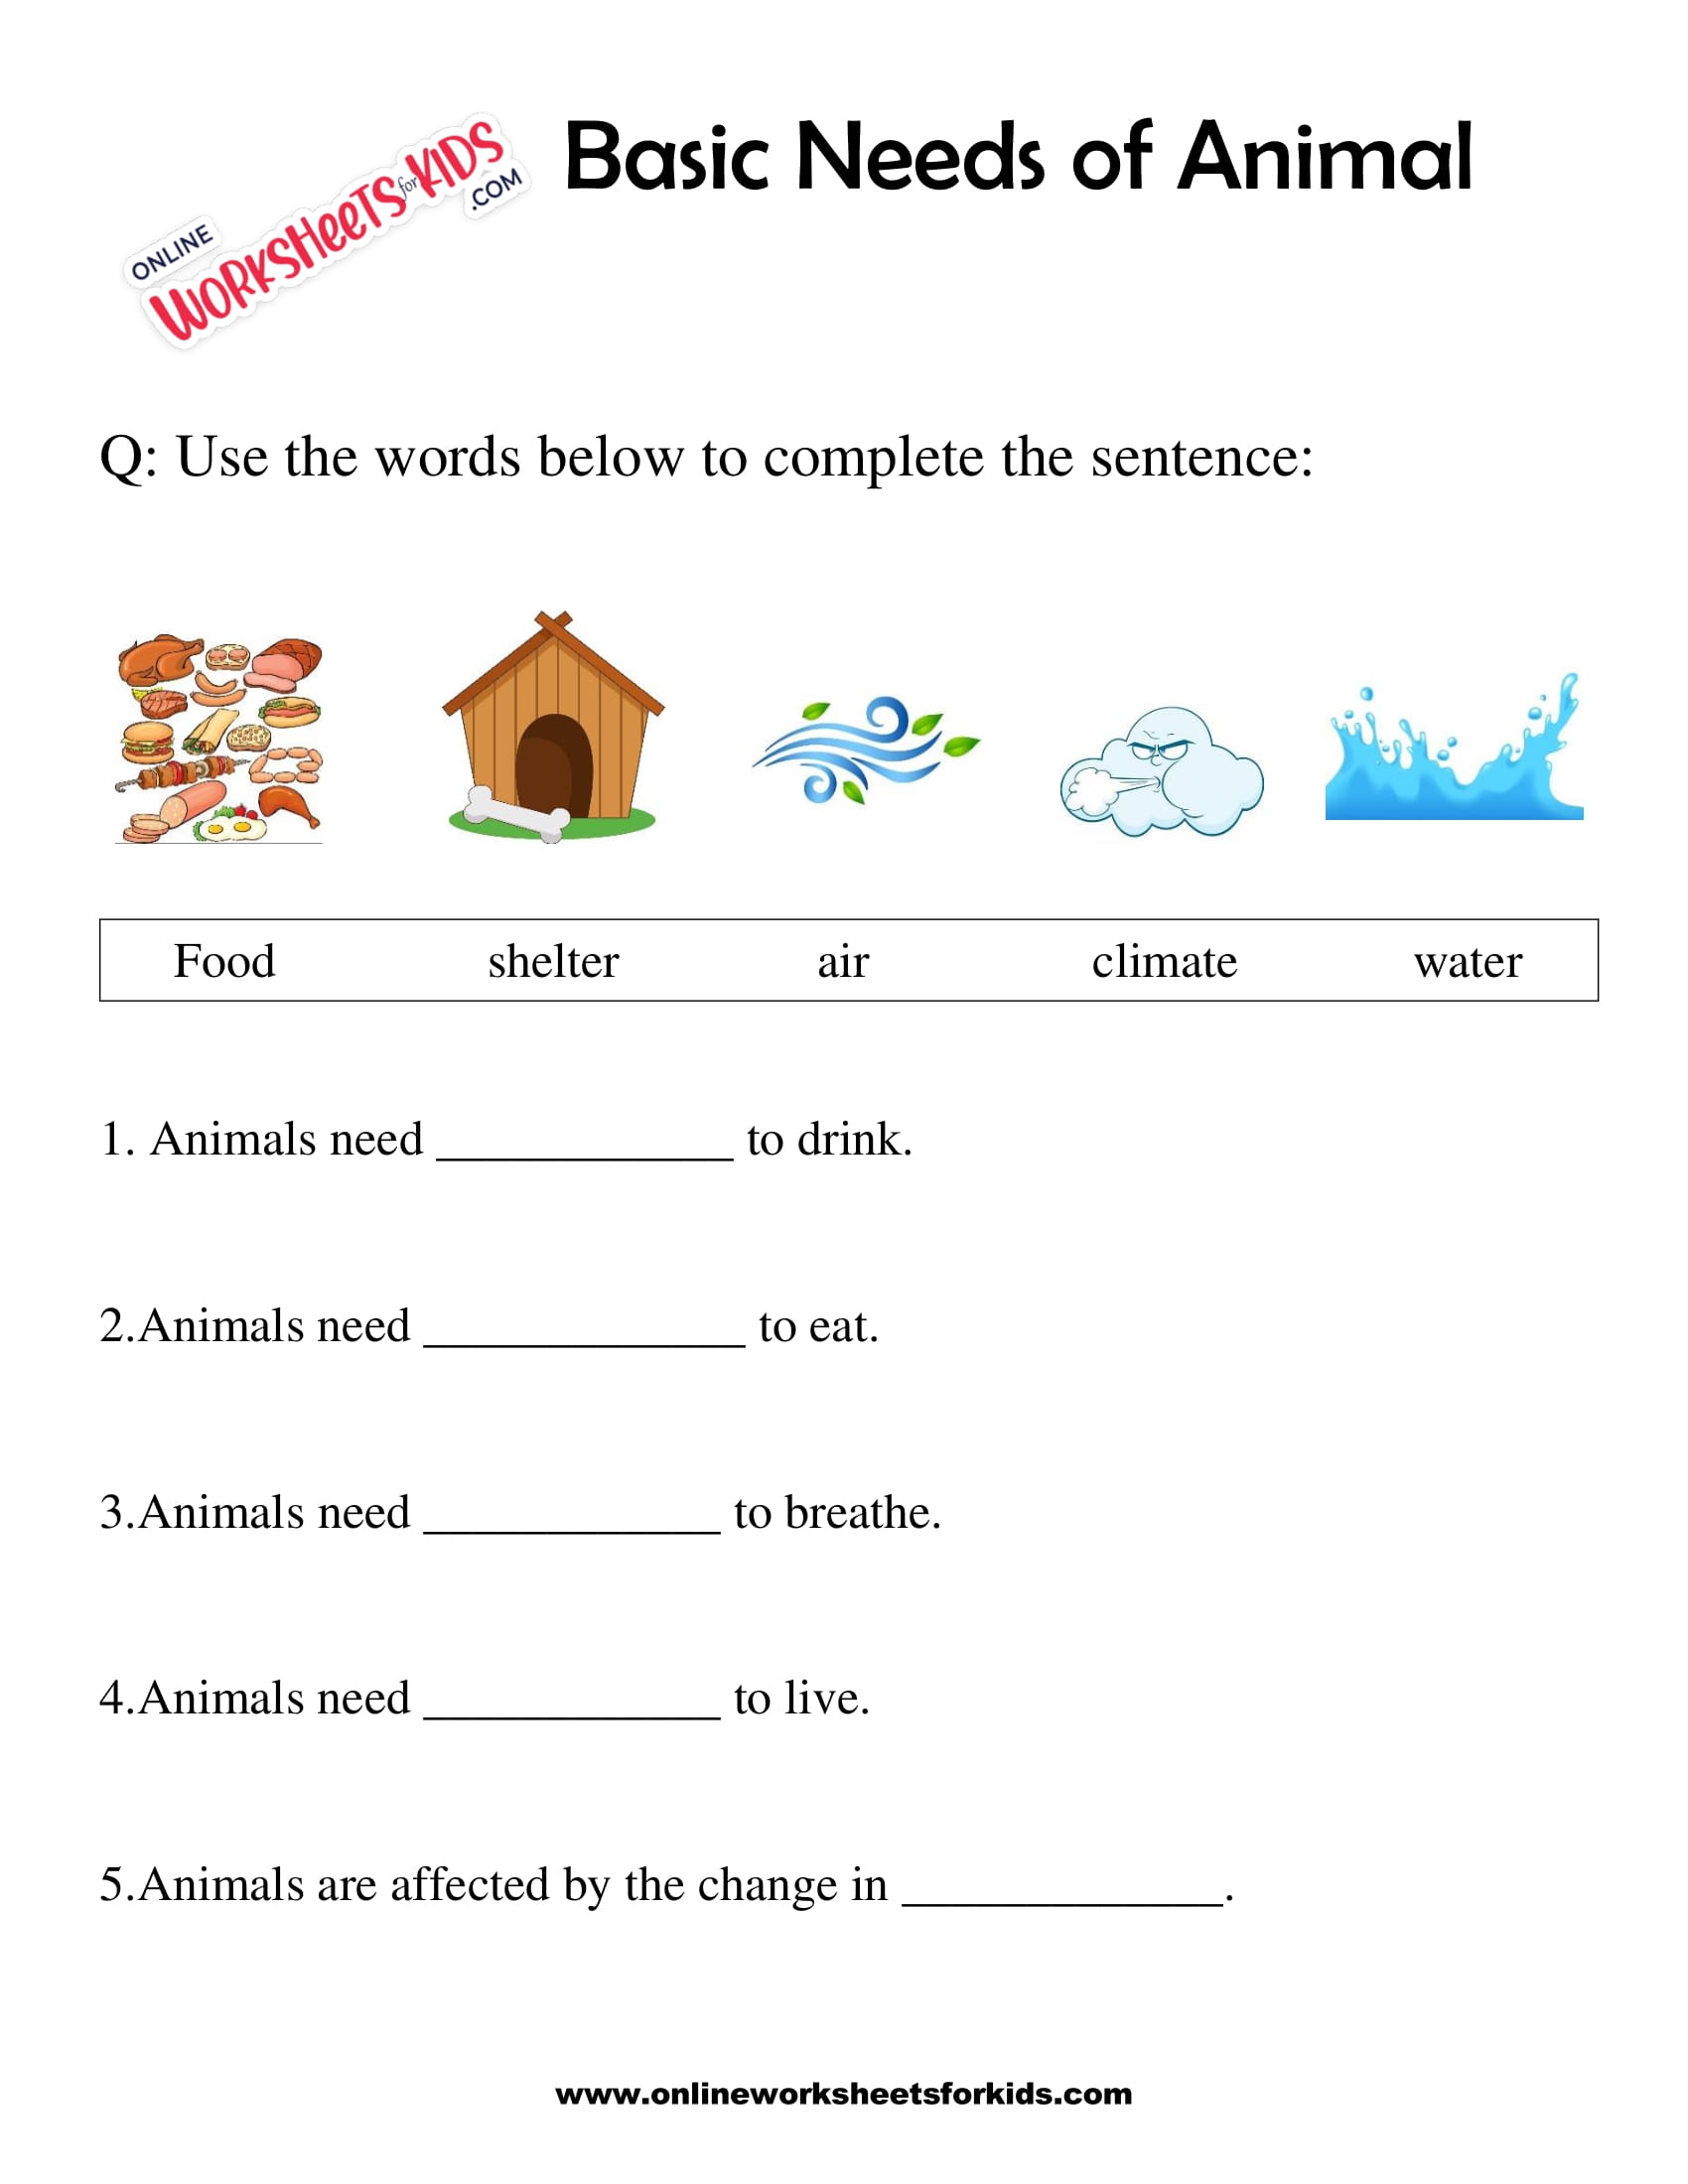 Basic Needs of Animal Worksheet for grade 1-3